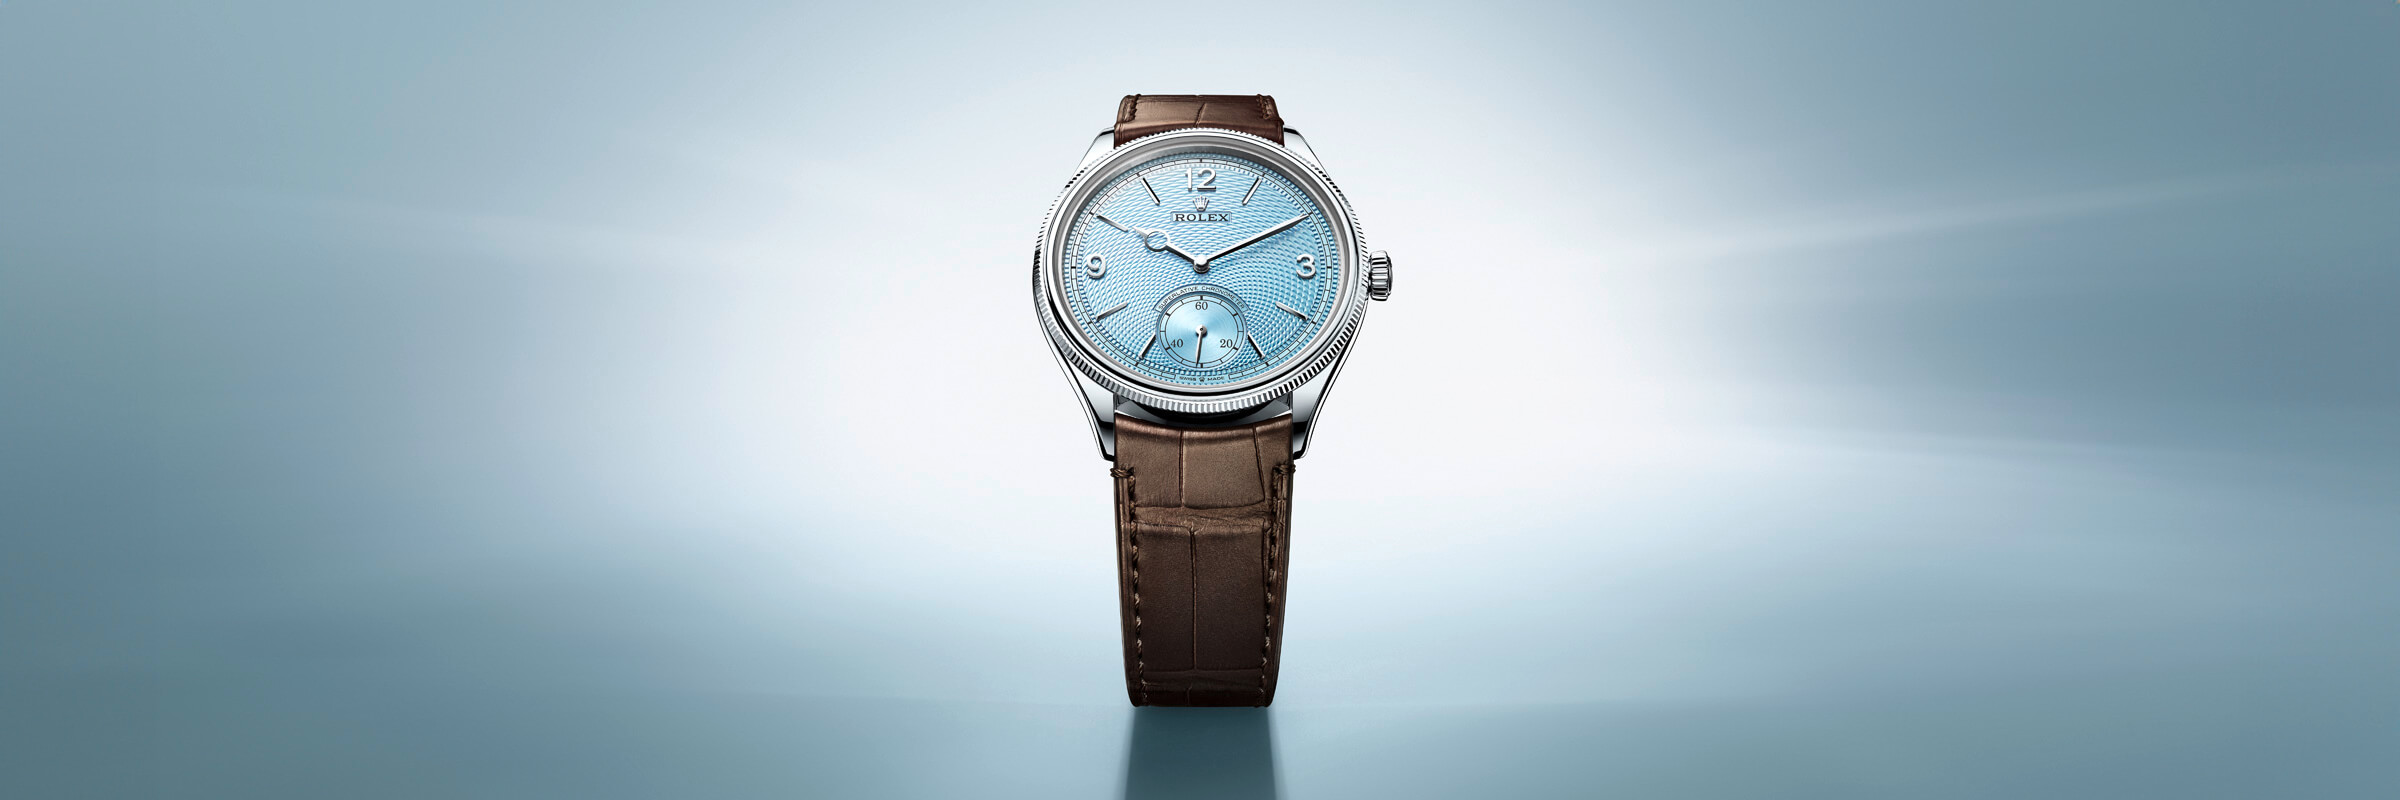 rolex 1908 in platinum, m52506-0002 - global watch company